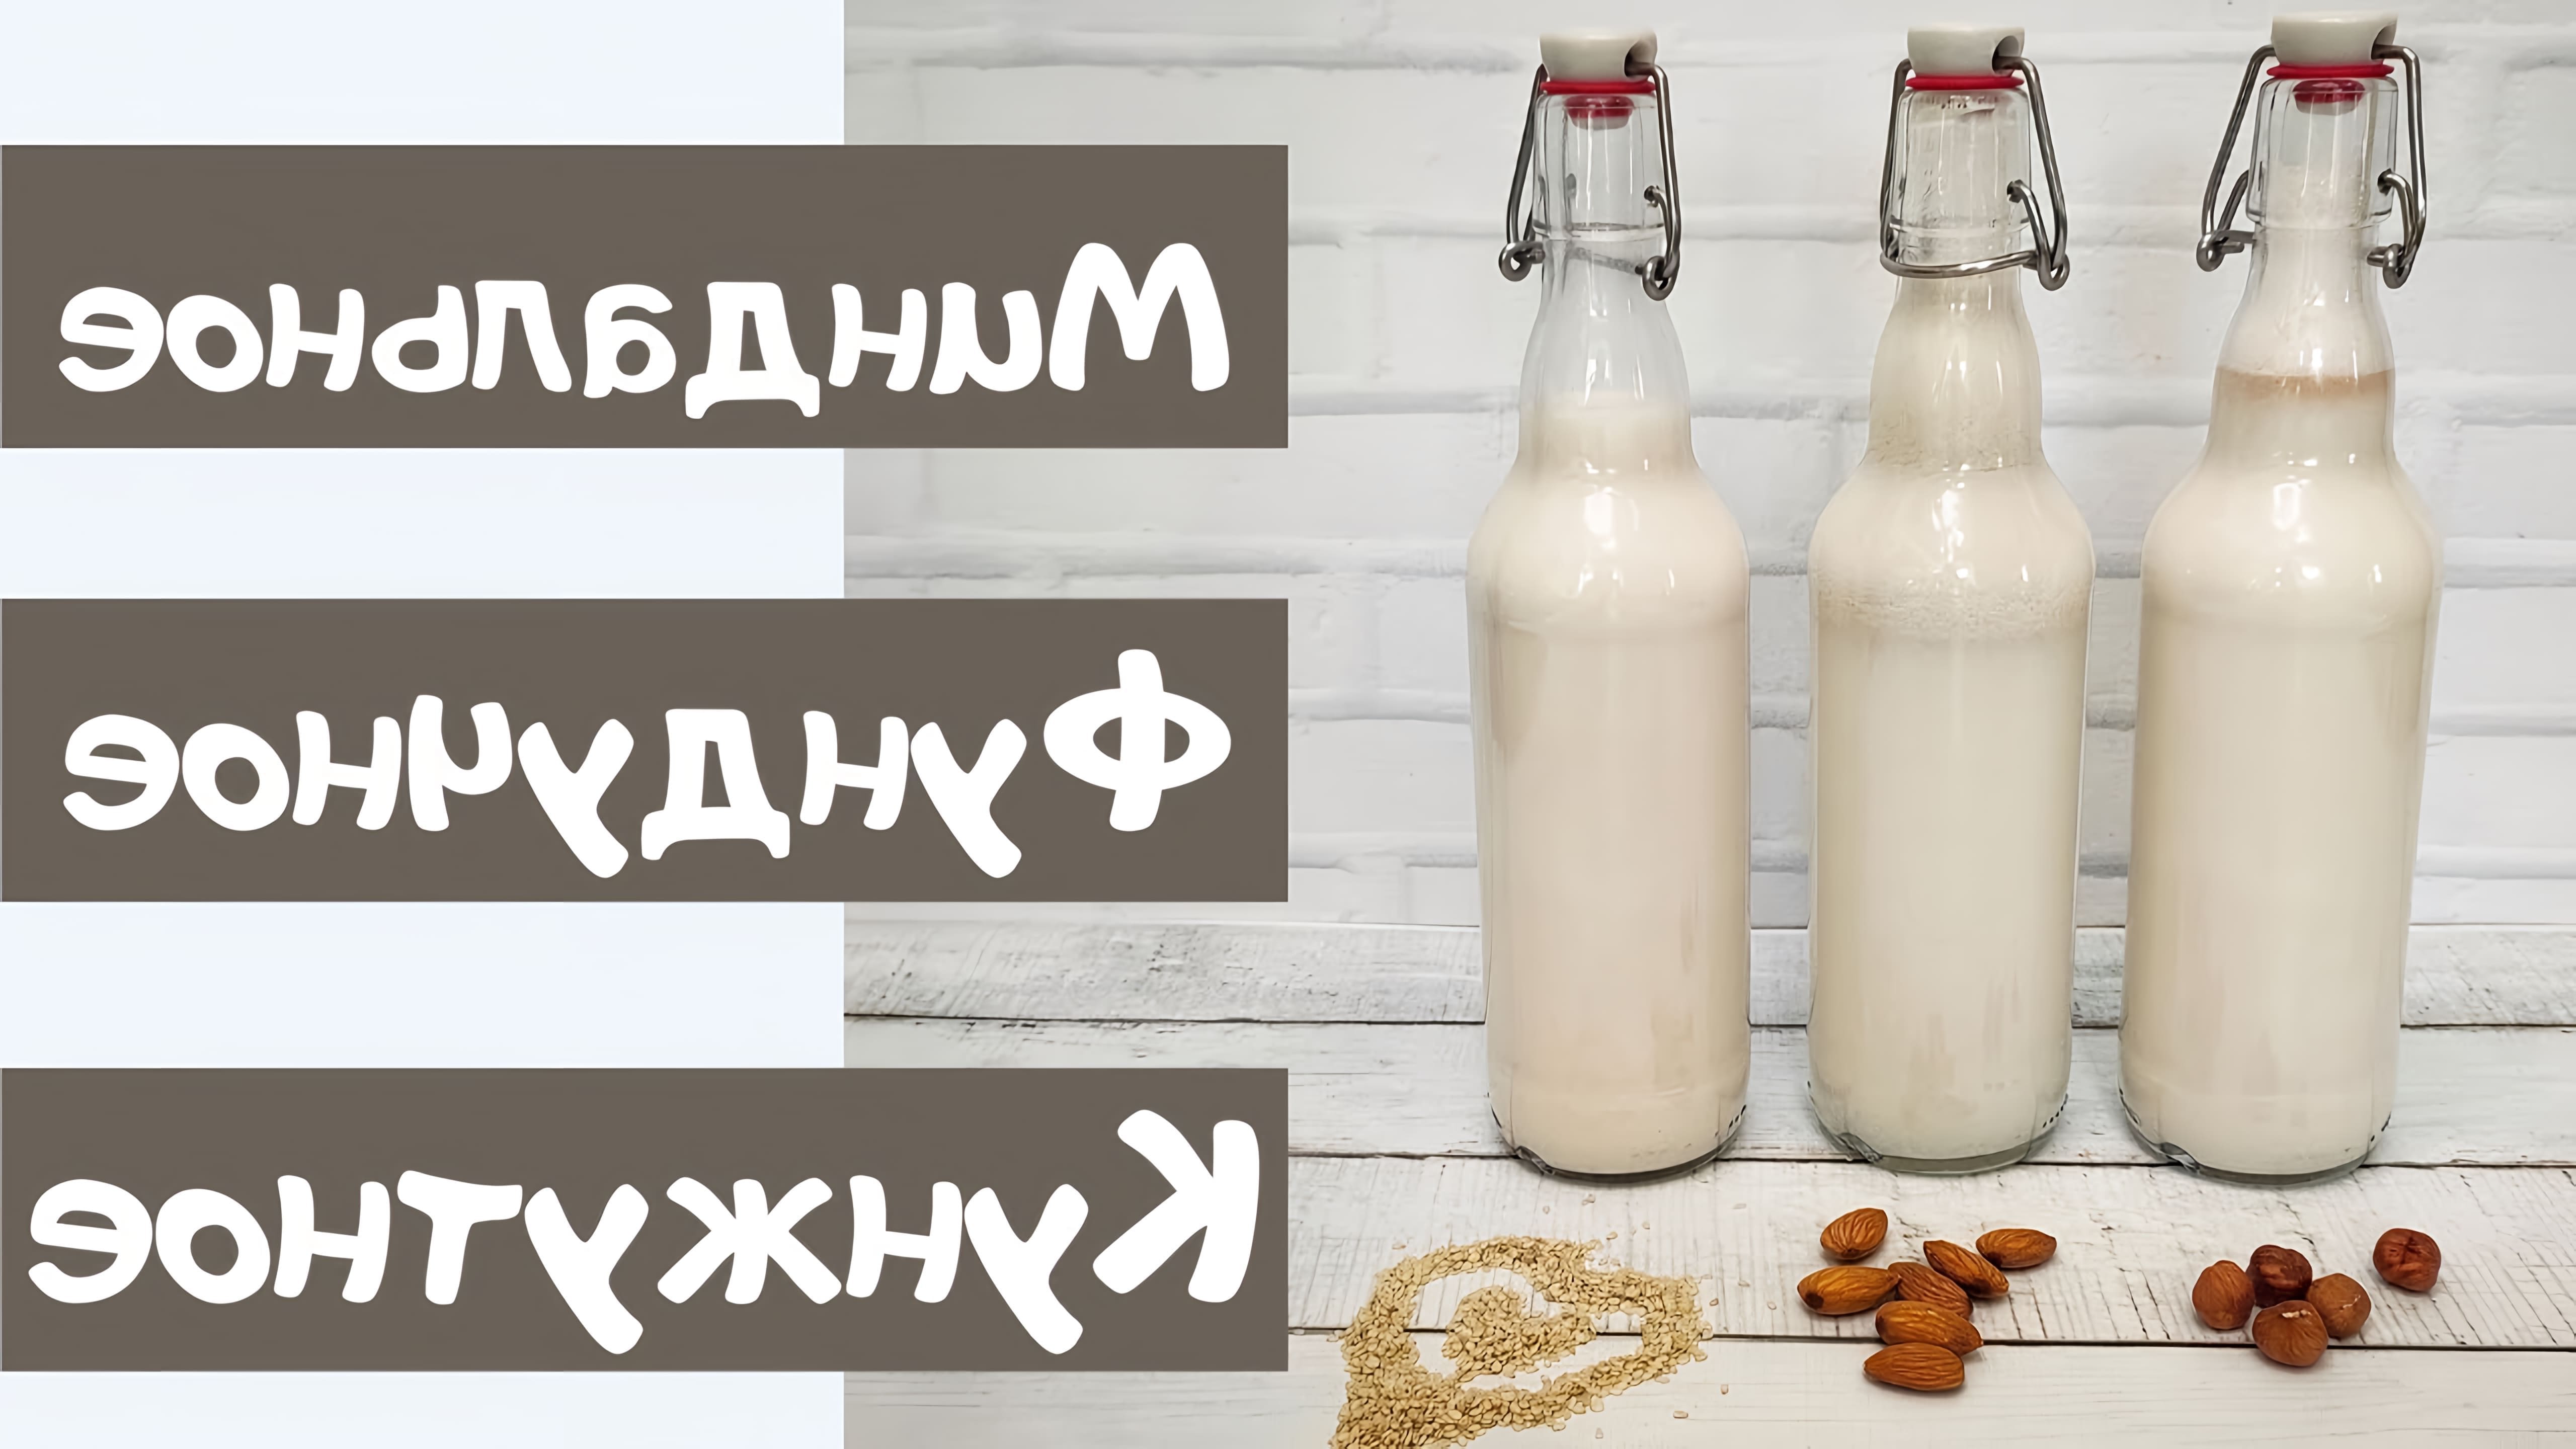 В этом видео демонстрируются три рецепта растительного молока: миндальное, фундучное и кунжутное